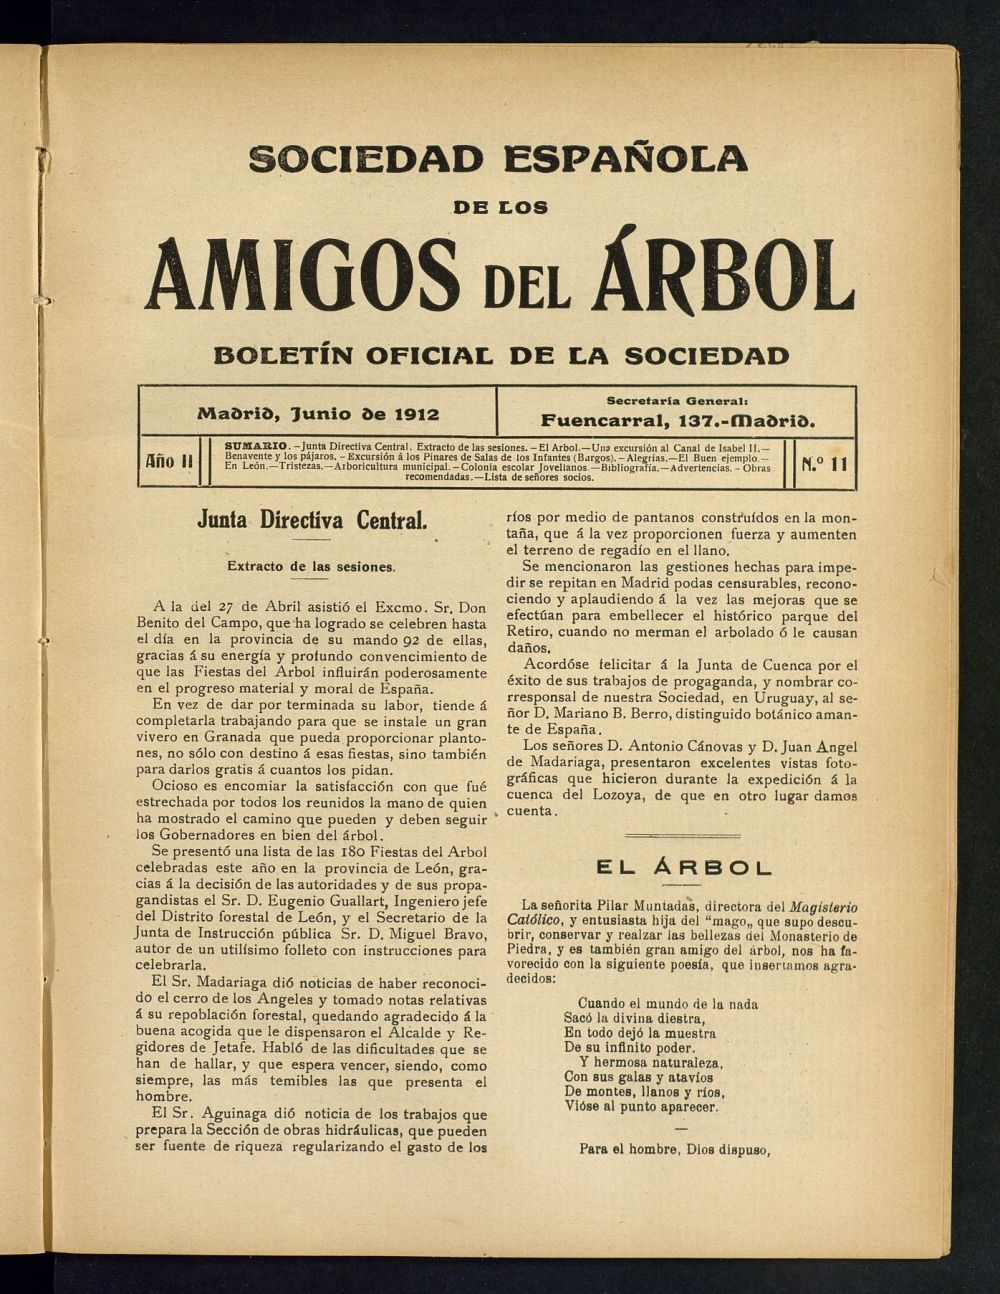 Boletn Comisin organizadora de la Sociedad Espaola de los amigos del rbol de junio de 1912